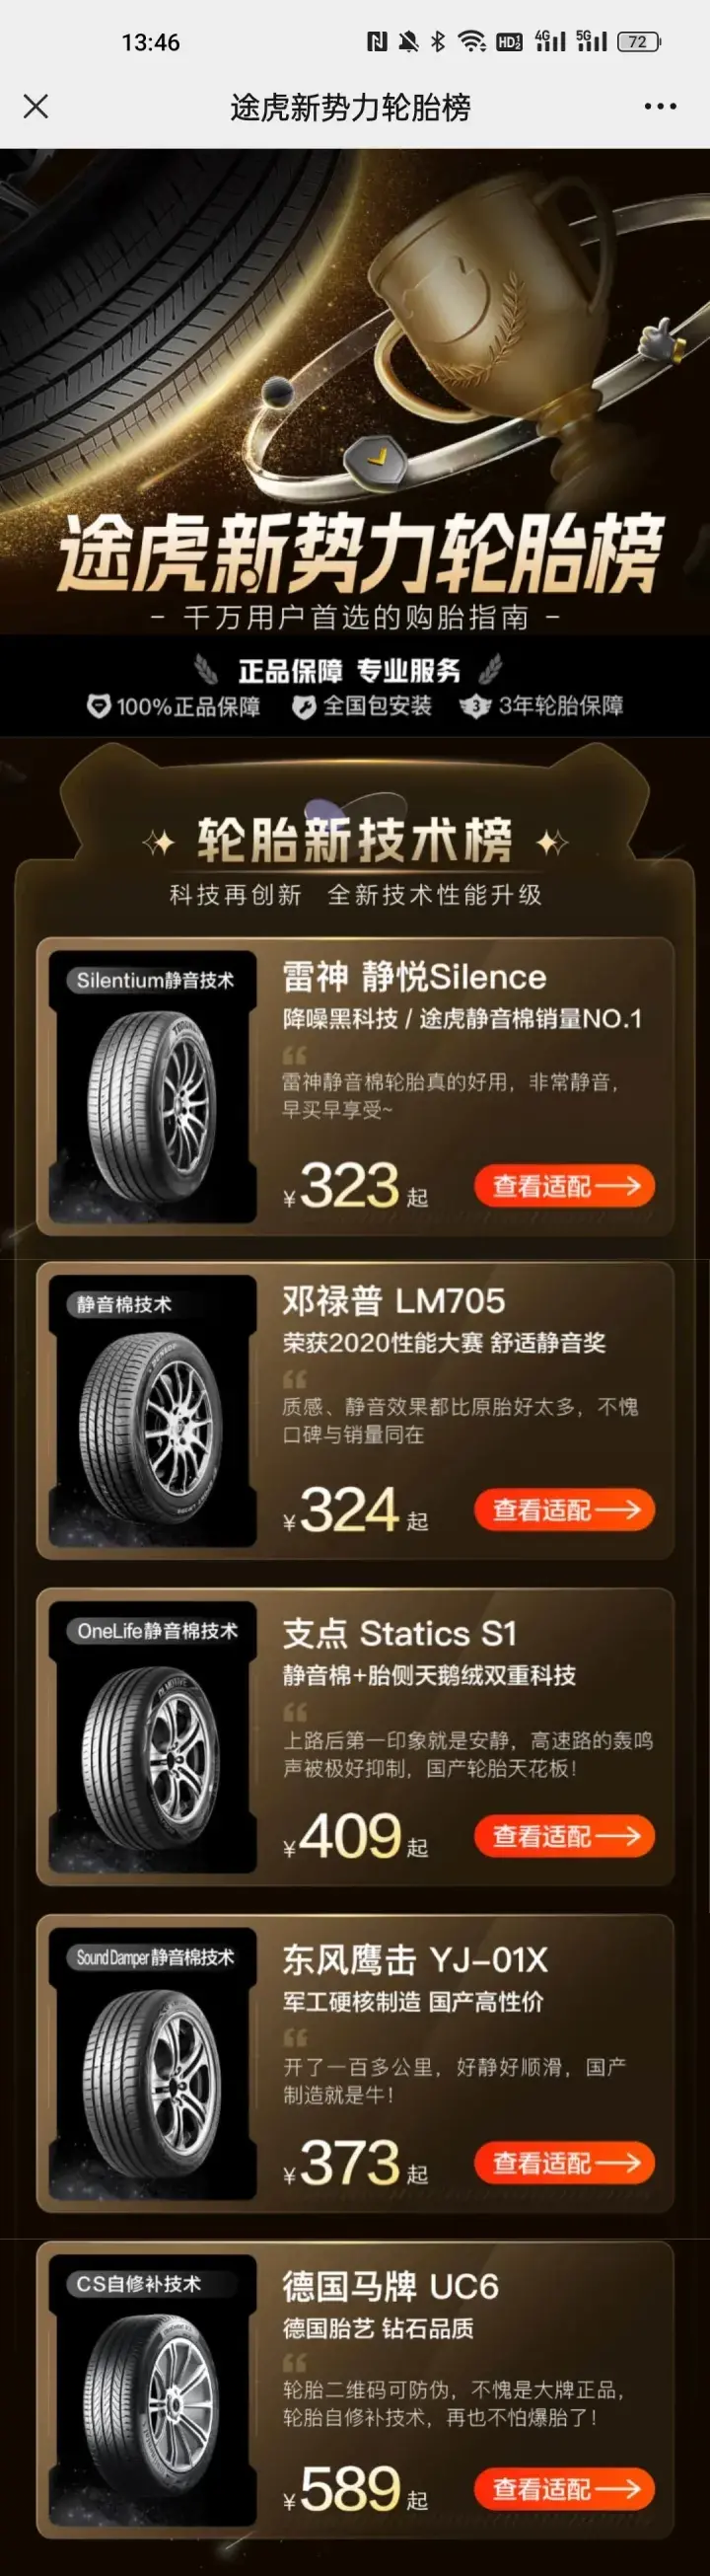 迅雷不及掩耳态势，雷神轮胎强势带动中国品牌崛起